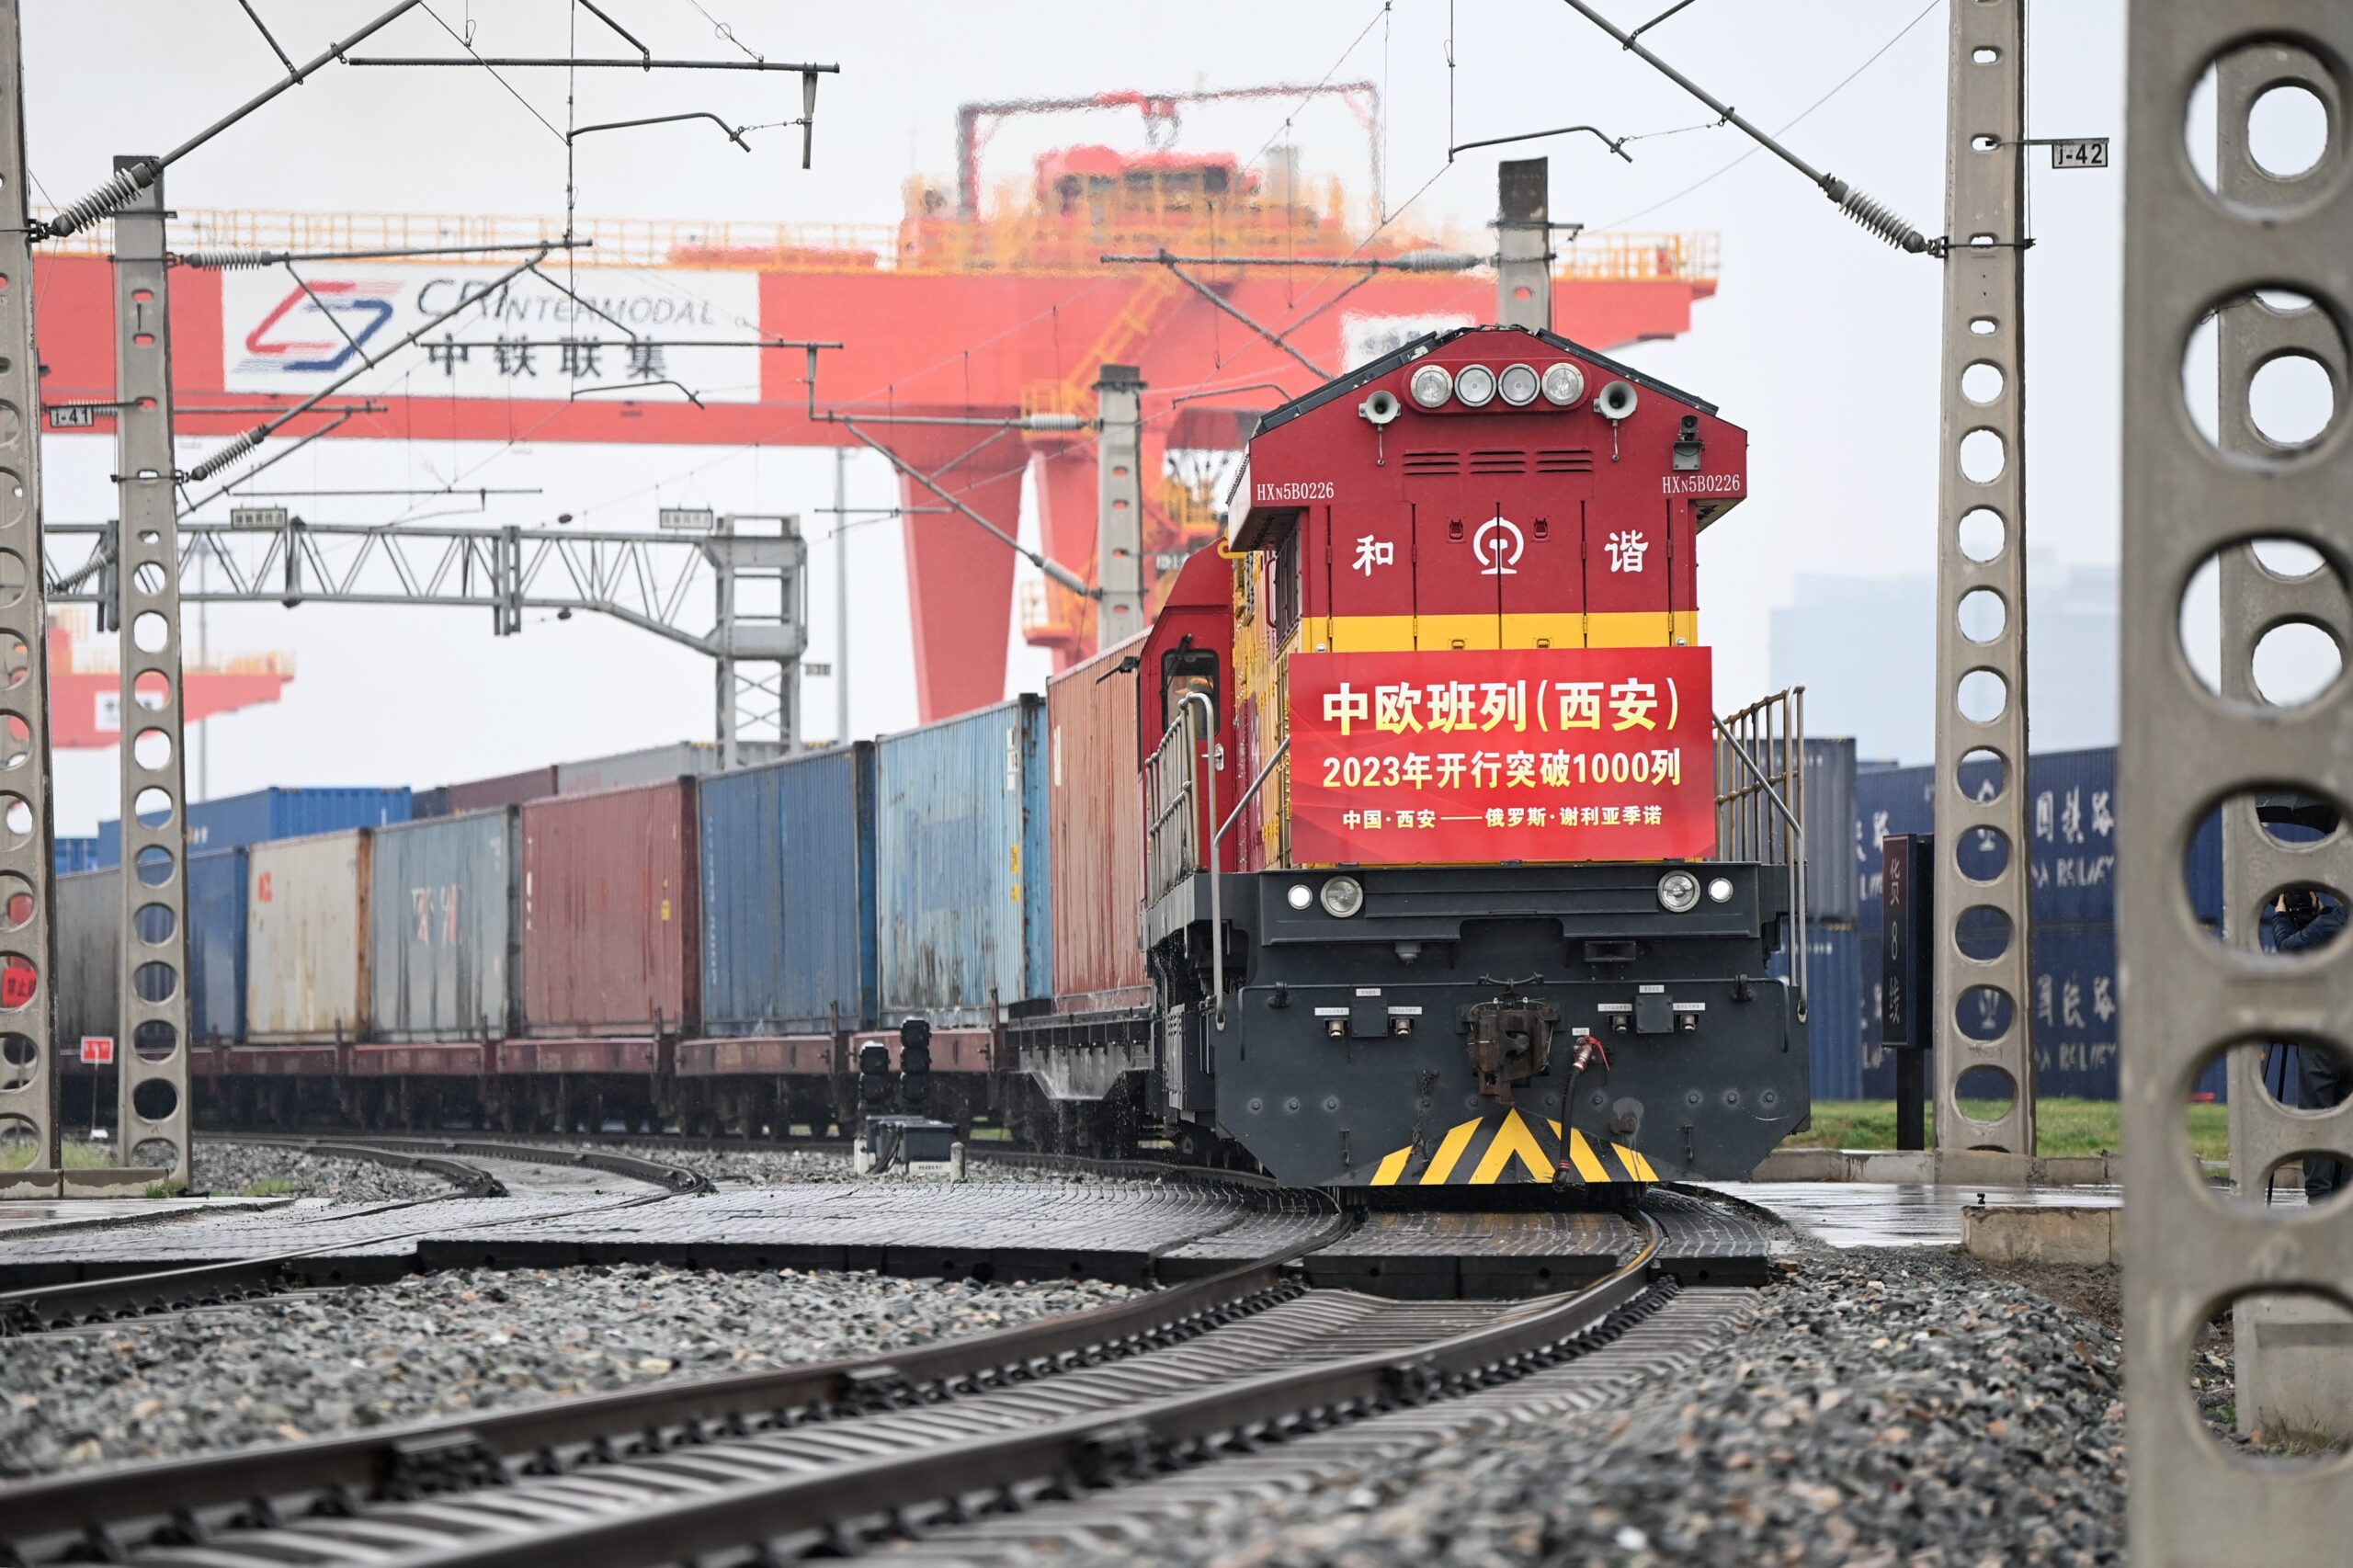 ส่านซีรองรับ 'รถไฟสินค้าจีน-ยุโรป' ทะลุ 1,000 ขบวนแล้วในปีนี้